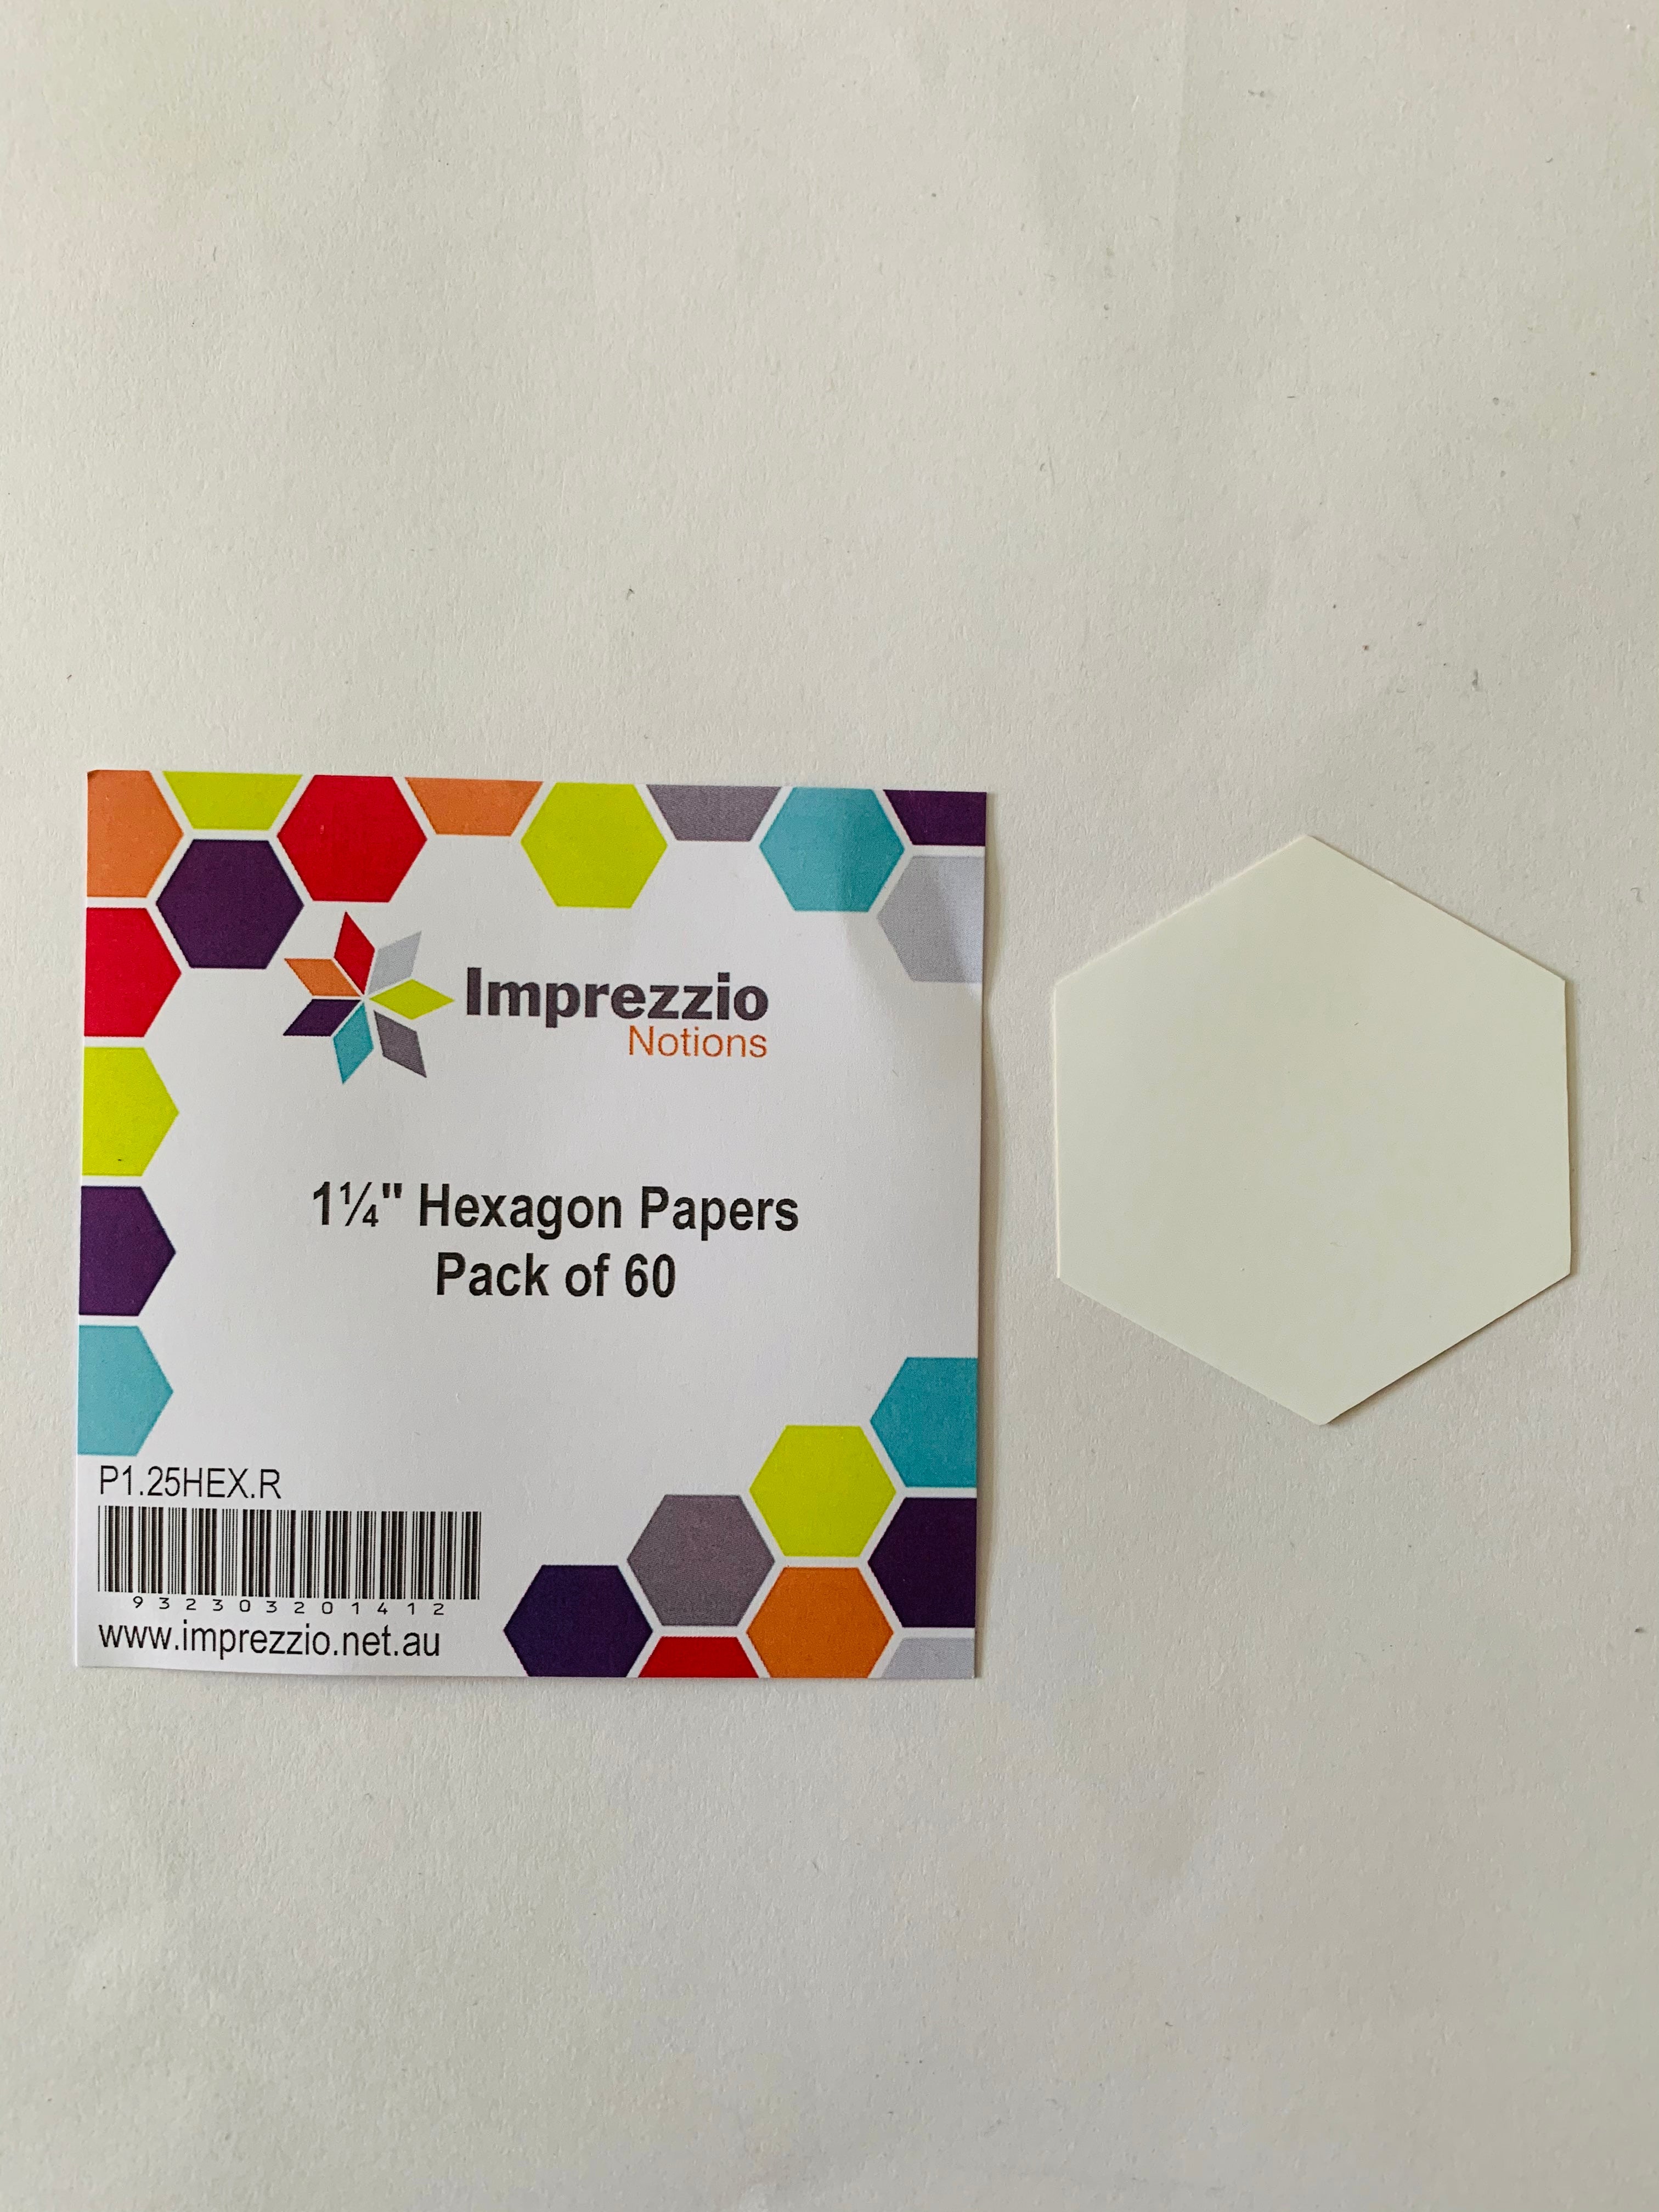 Imprezzio 1 1/4” hexagon papers